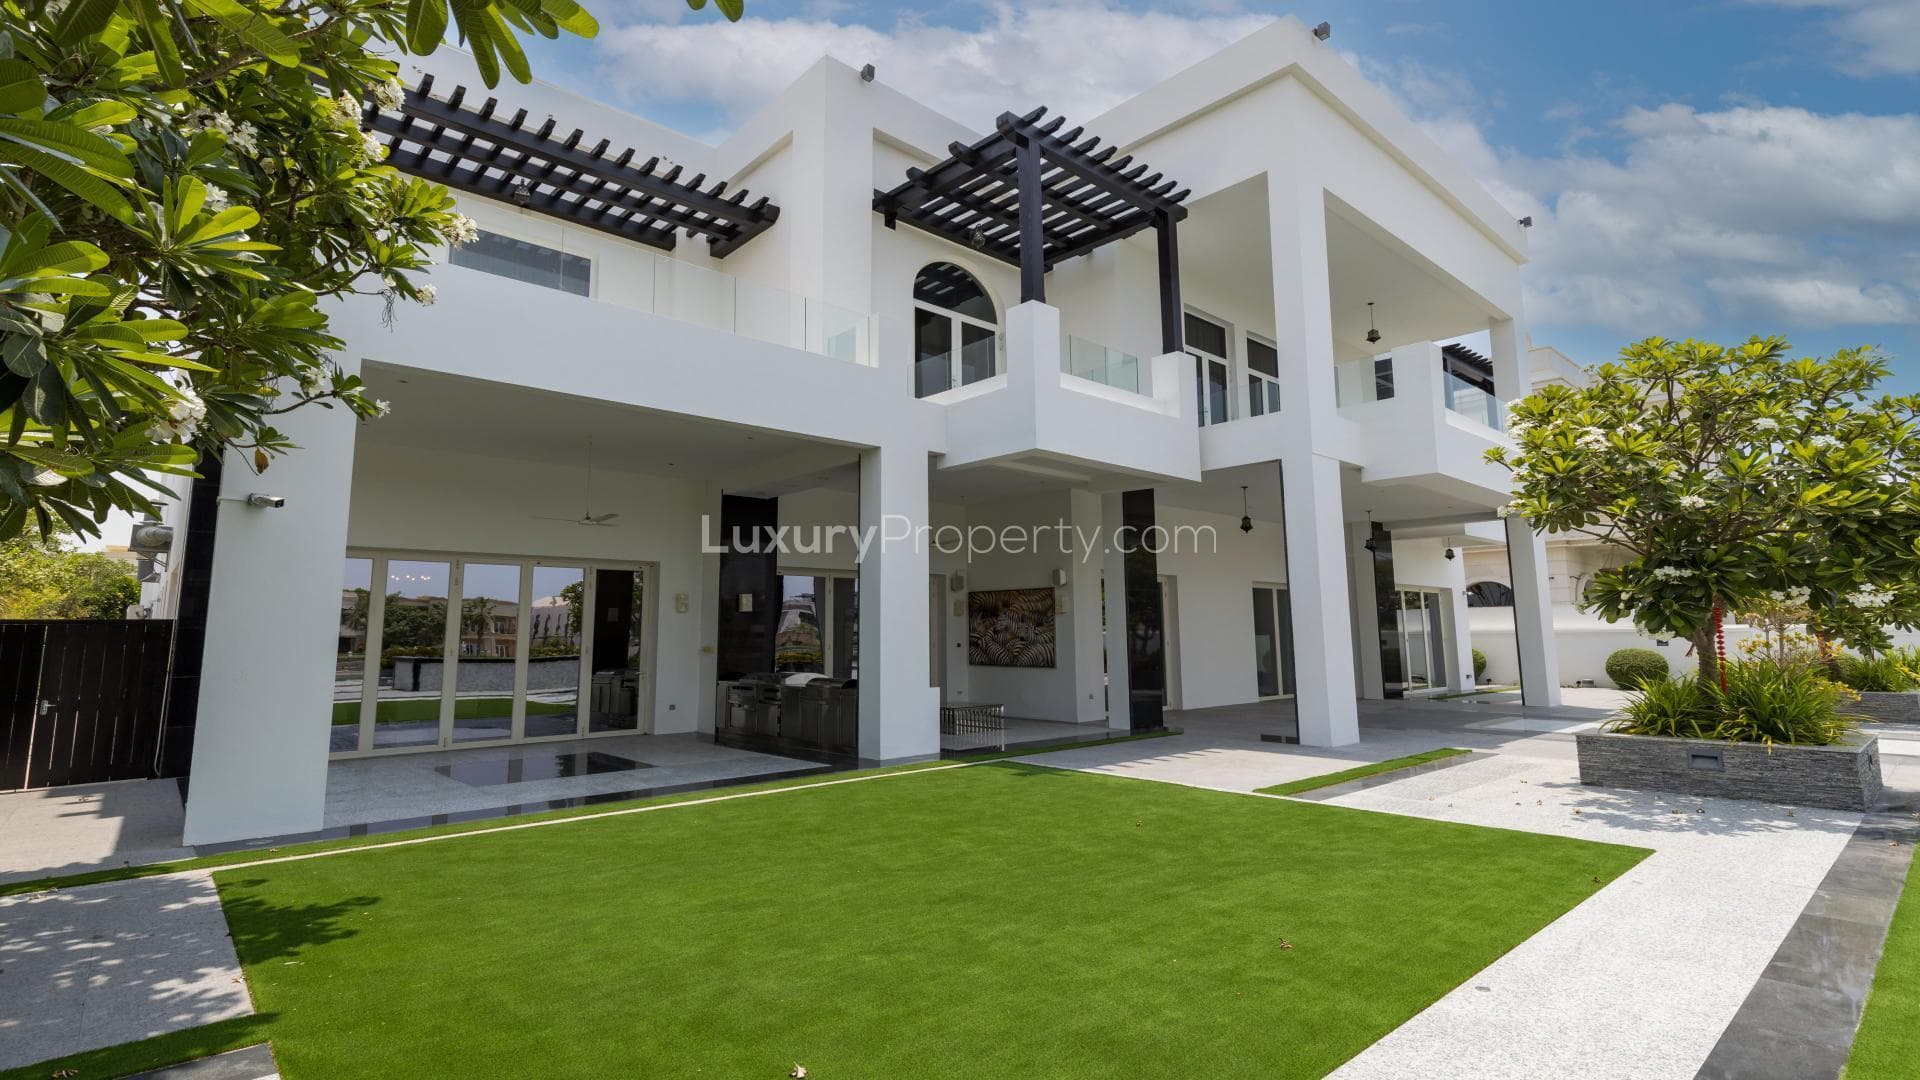 4 Bedroom Villa For Rent Emirates Hills Villas Lp20756 158e6aa770097b00.jpg